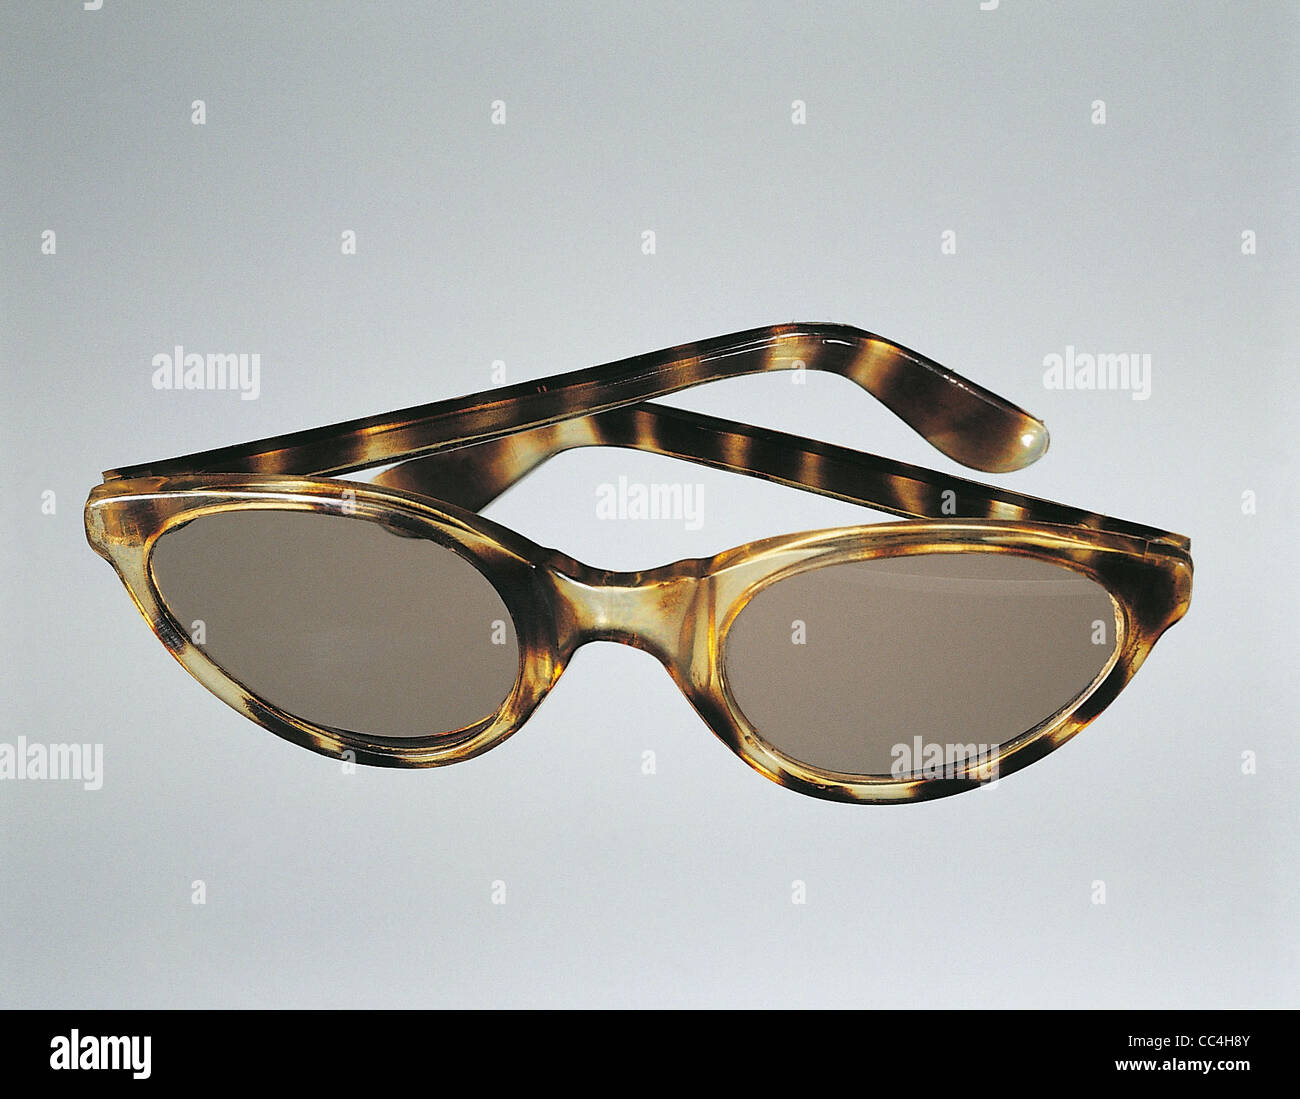 Seguridad polarizada transición fotocromática gafas de sol trabajo  seguridad anti polvo protección gafas para hombres mujeres